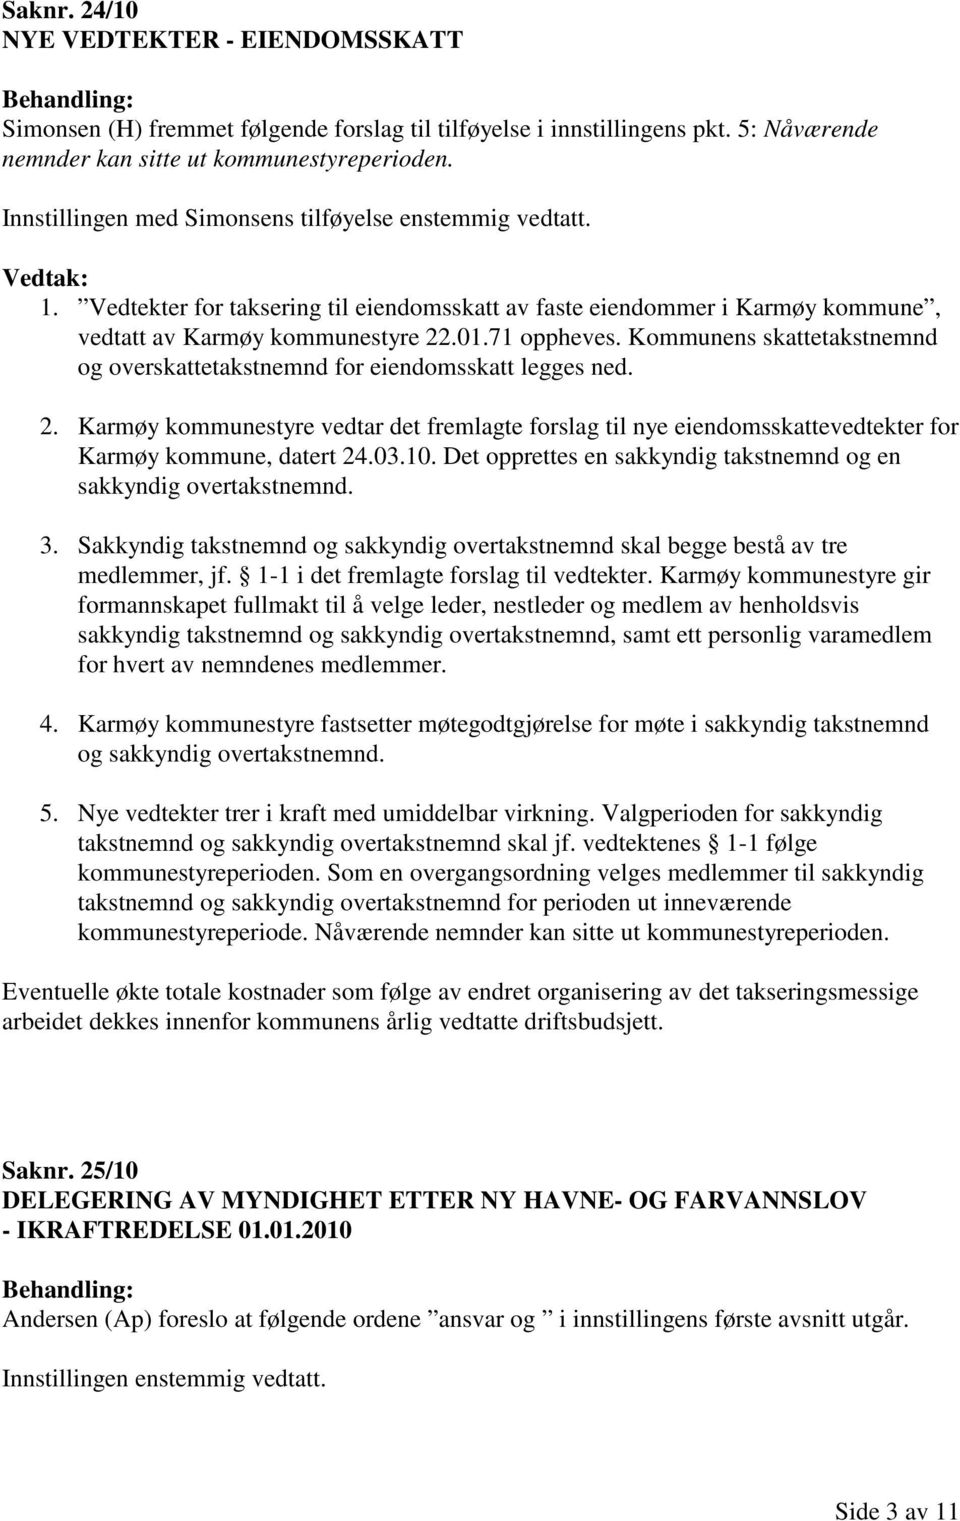 Kommunens skattetakstnemnd og overskattetakstnemnd for eiendomsskatt legges ned. 2. Karmøy kommunestyre vedtar det fremlagte forslag til nye eiendomsskattevedtekter for Karmøy kommune, datert 24.03.